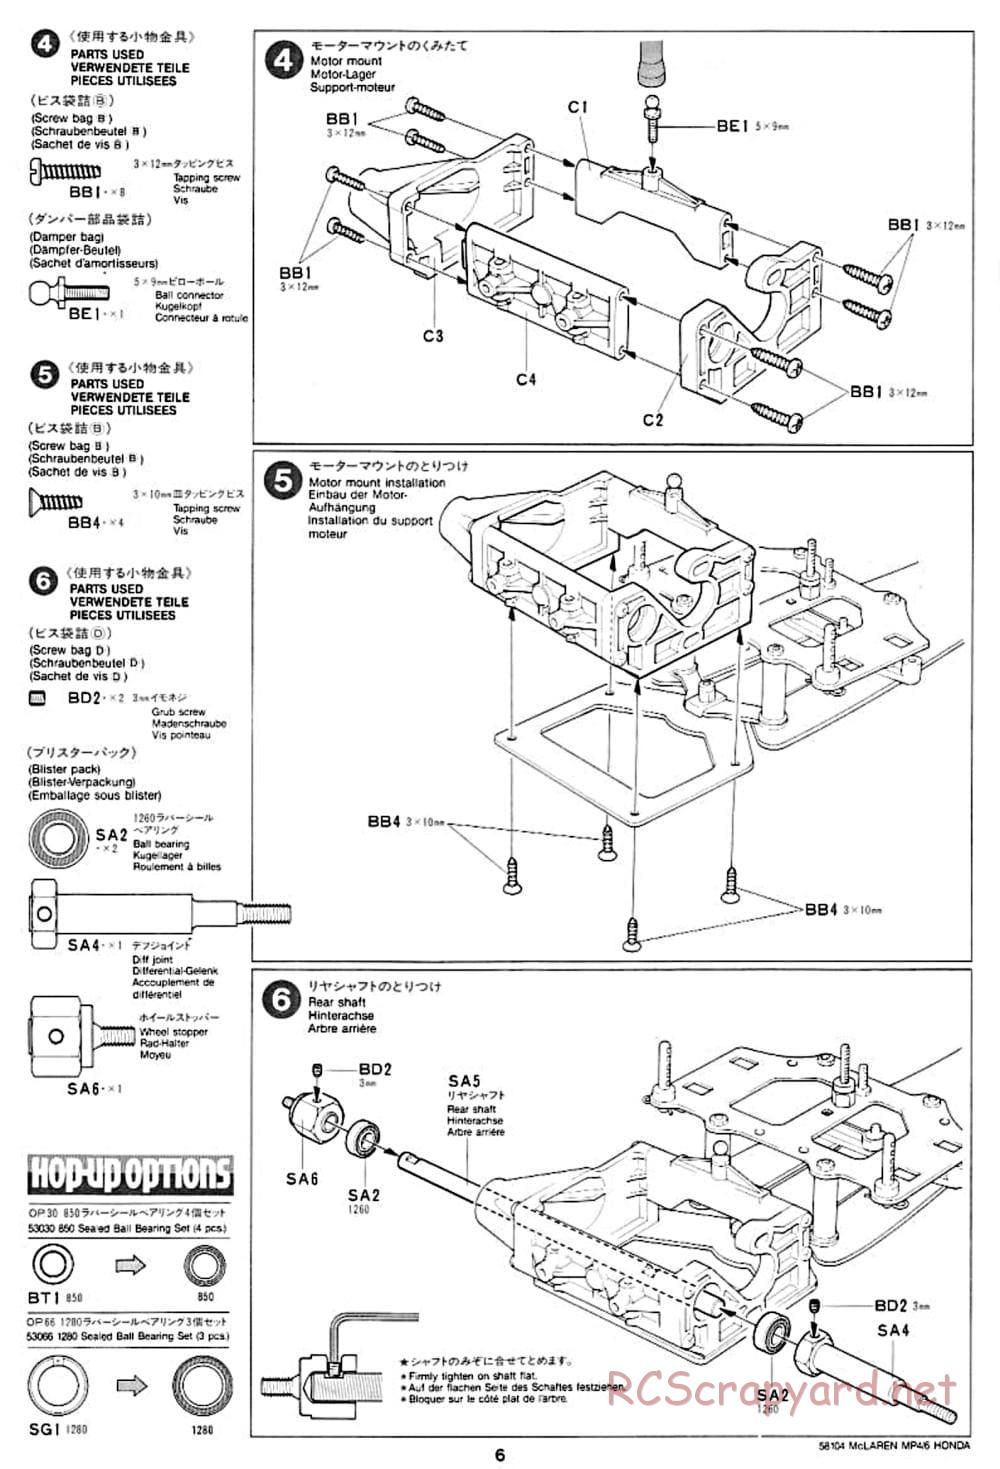 Tamiya - McLaren MP4/6 Honda - F102 Chassis - Manual - Page 6